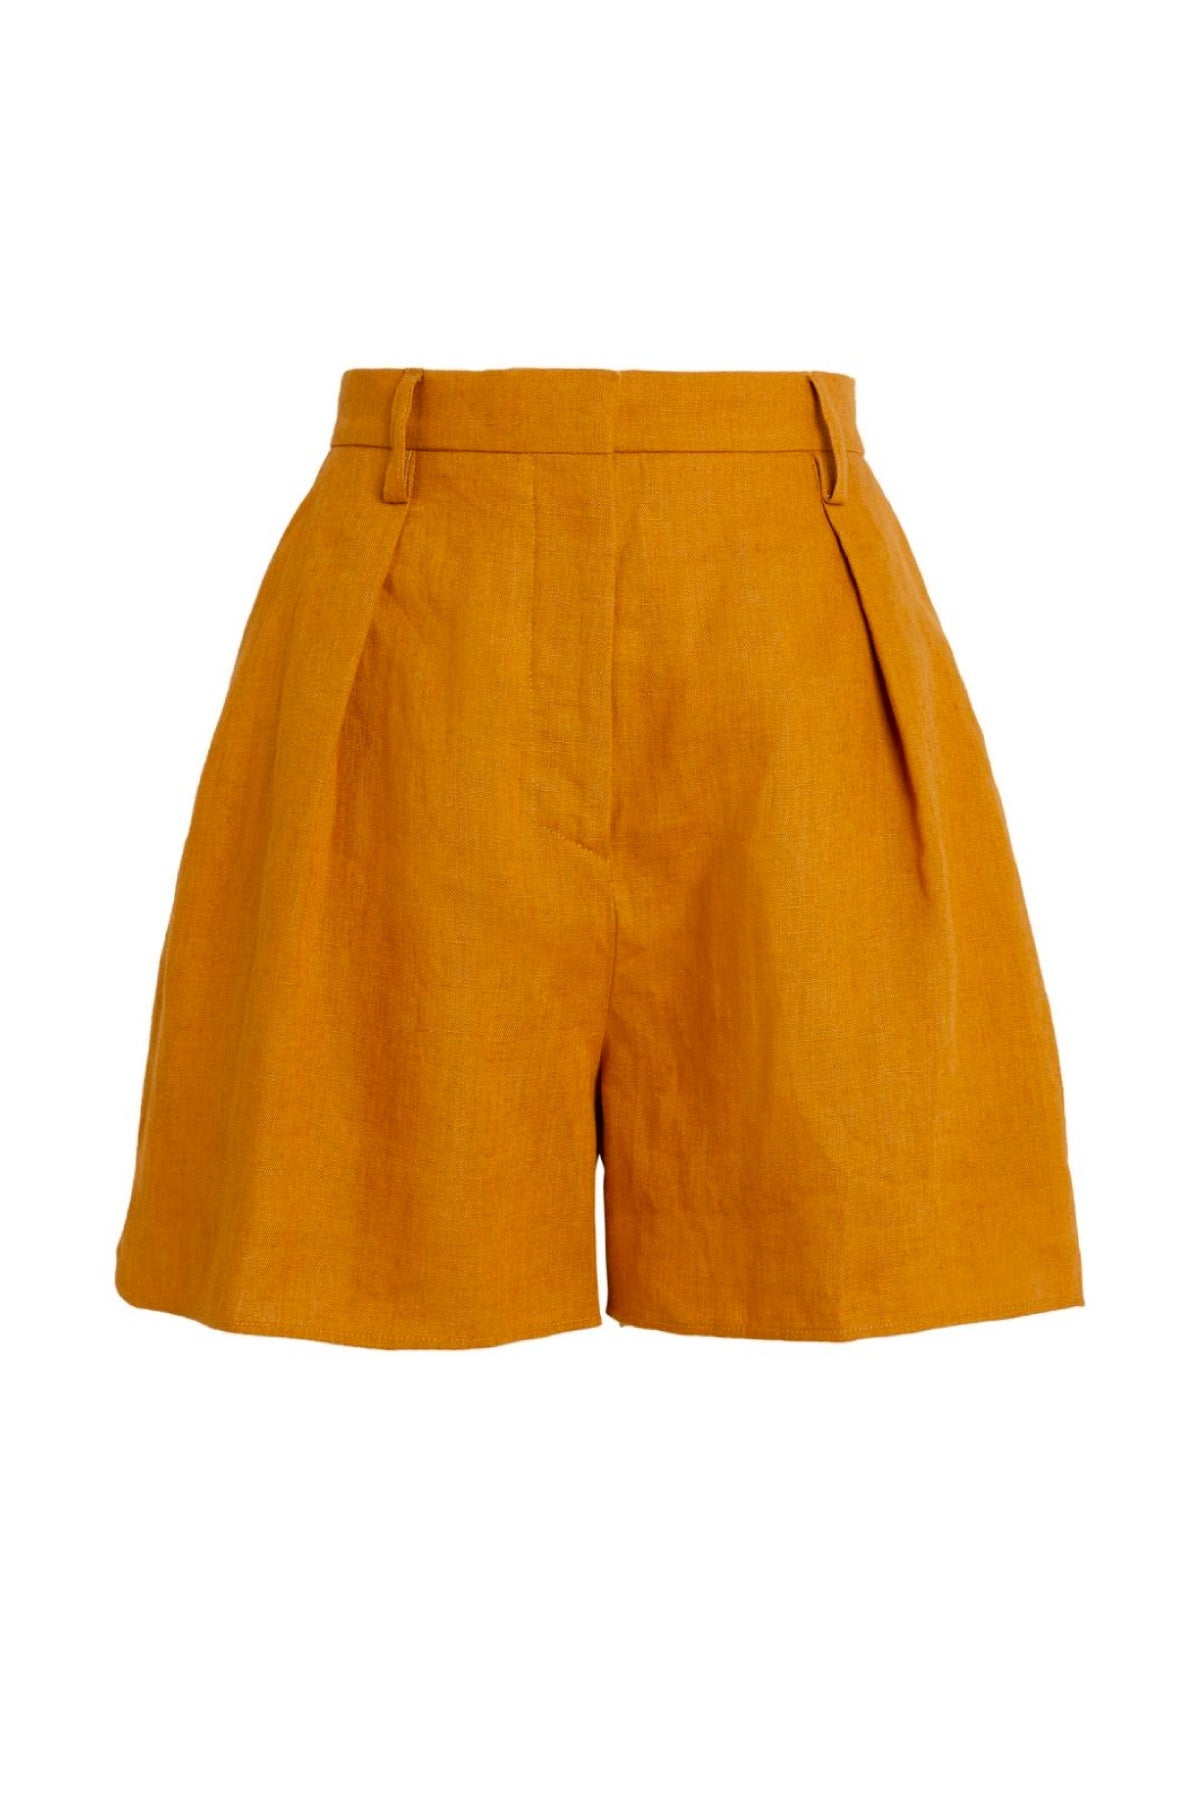 Nanushka Rima Tailored Linen Shorts - Camel